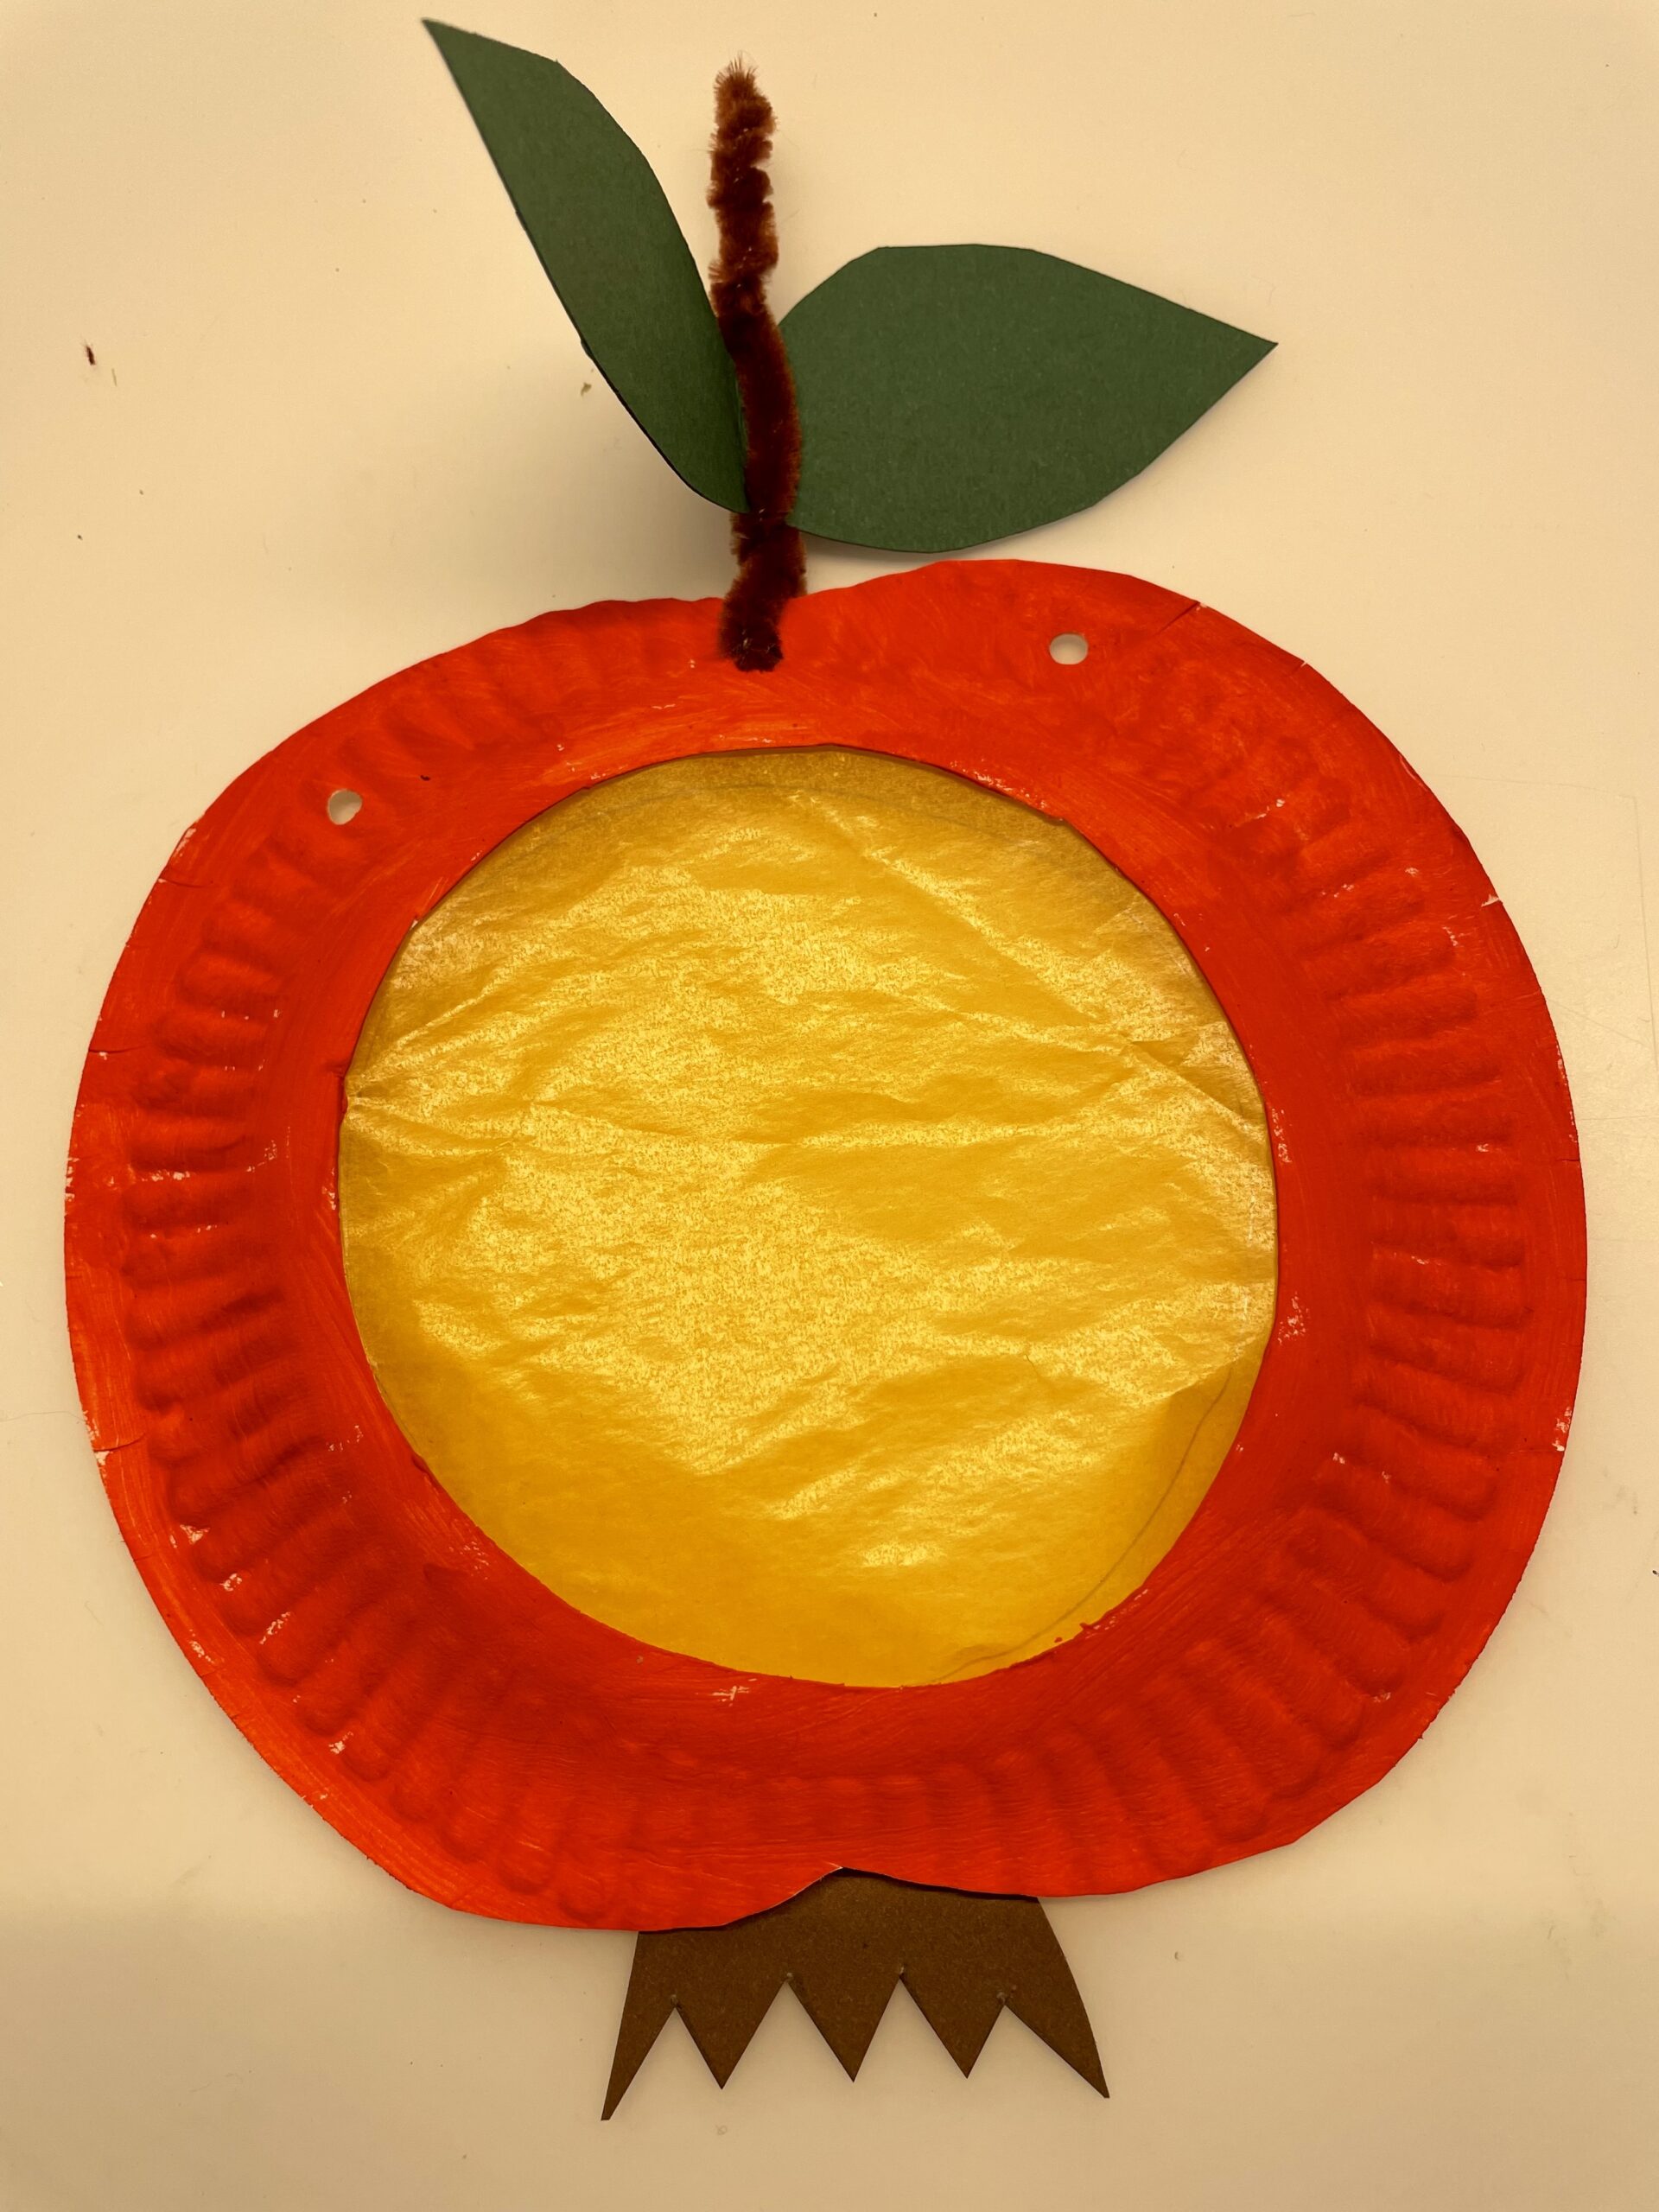 Bild zum Schritt 21 für das Bastel- und DIY-Abenteuer für Kinder: 'Fertig ist der Apfel. Jetzt locht ihr noch links und...'